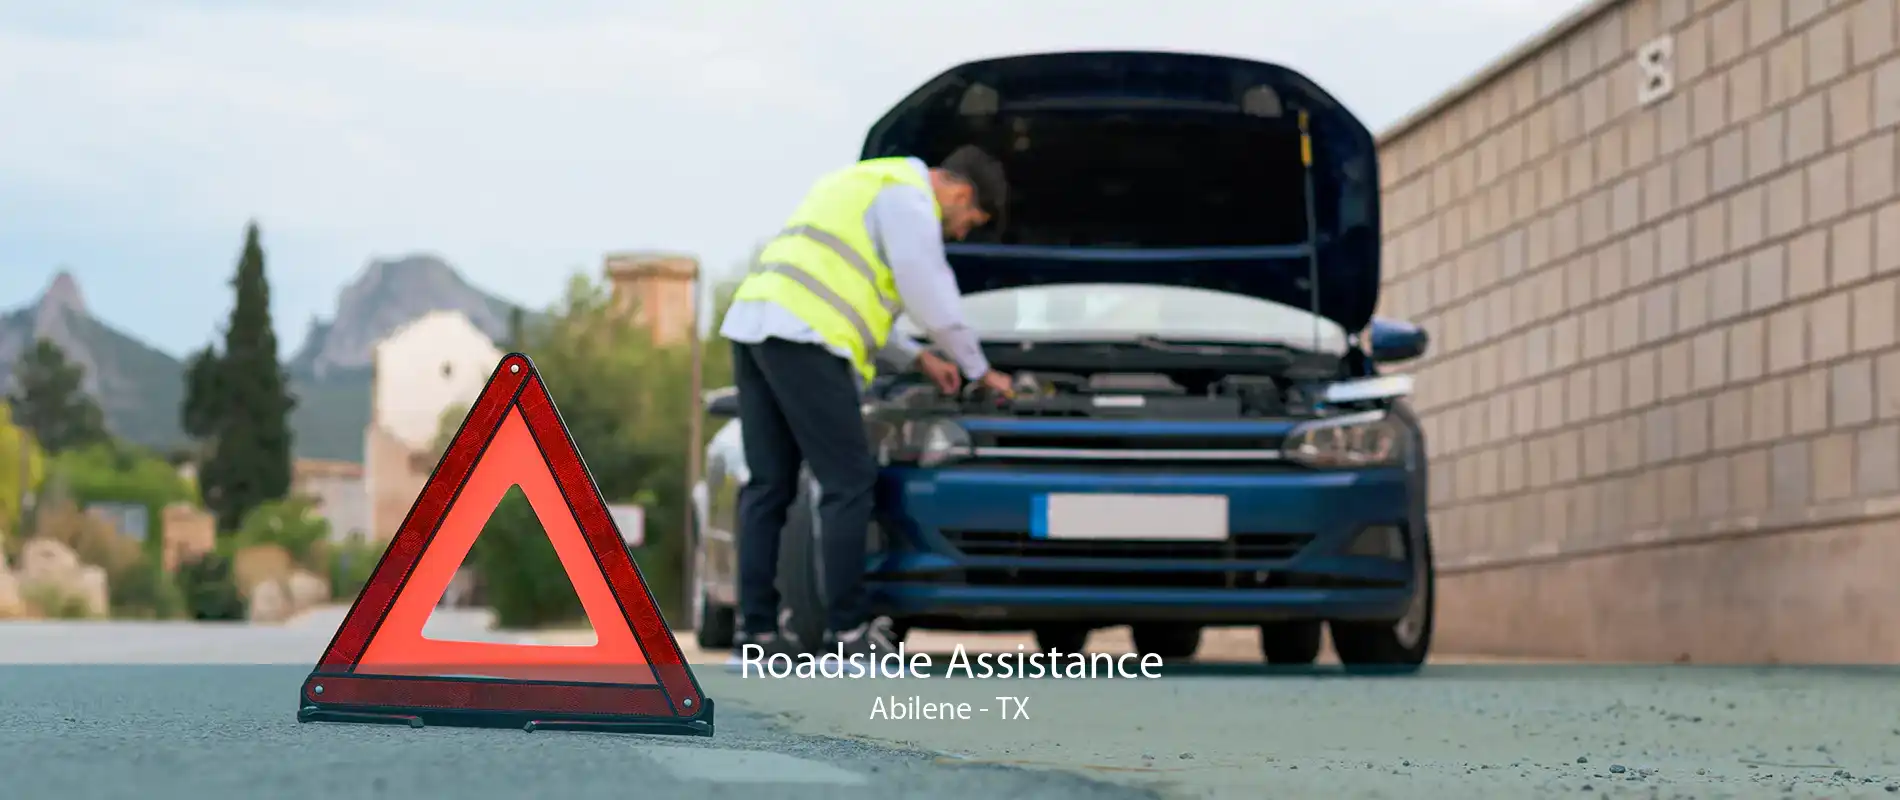 Roadside Assistance Abilene - TX